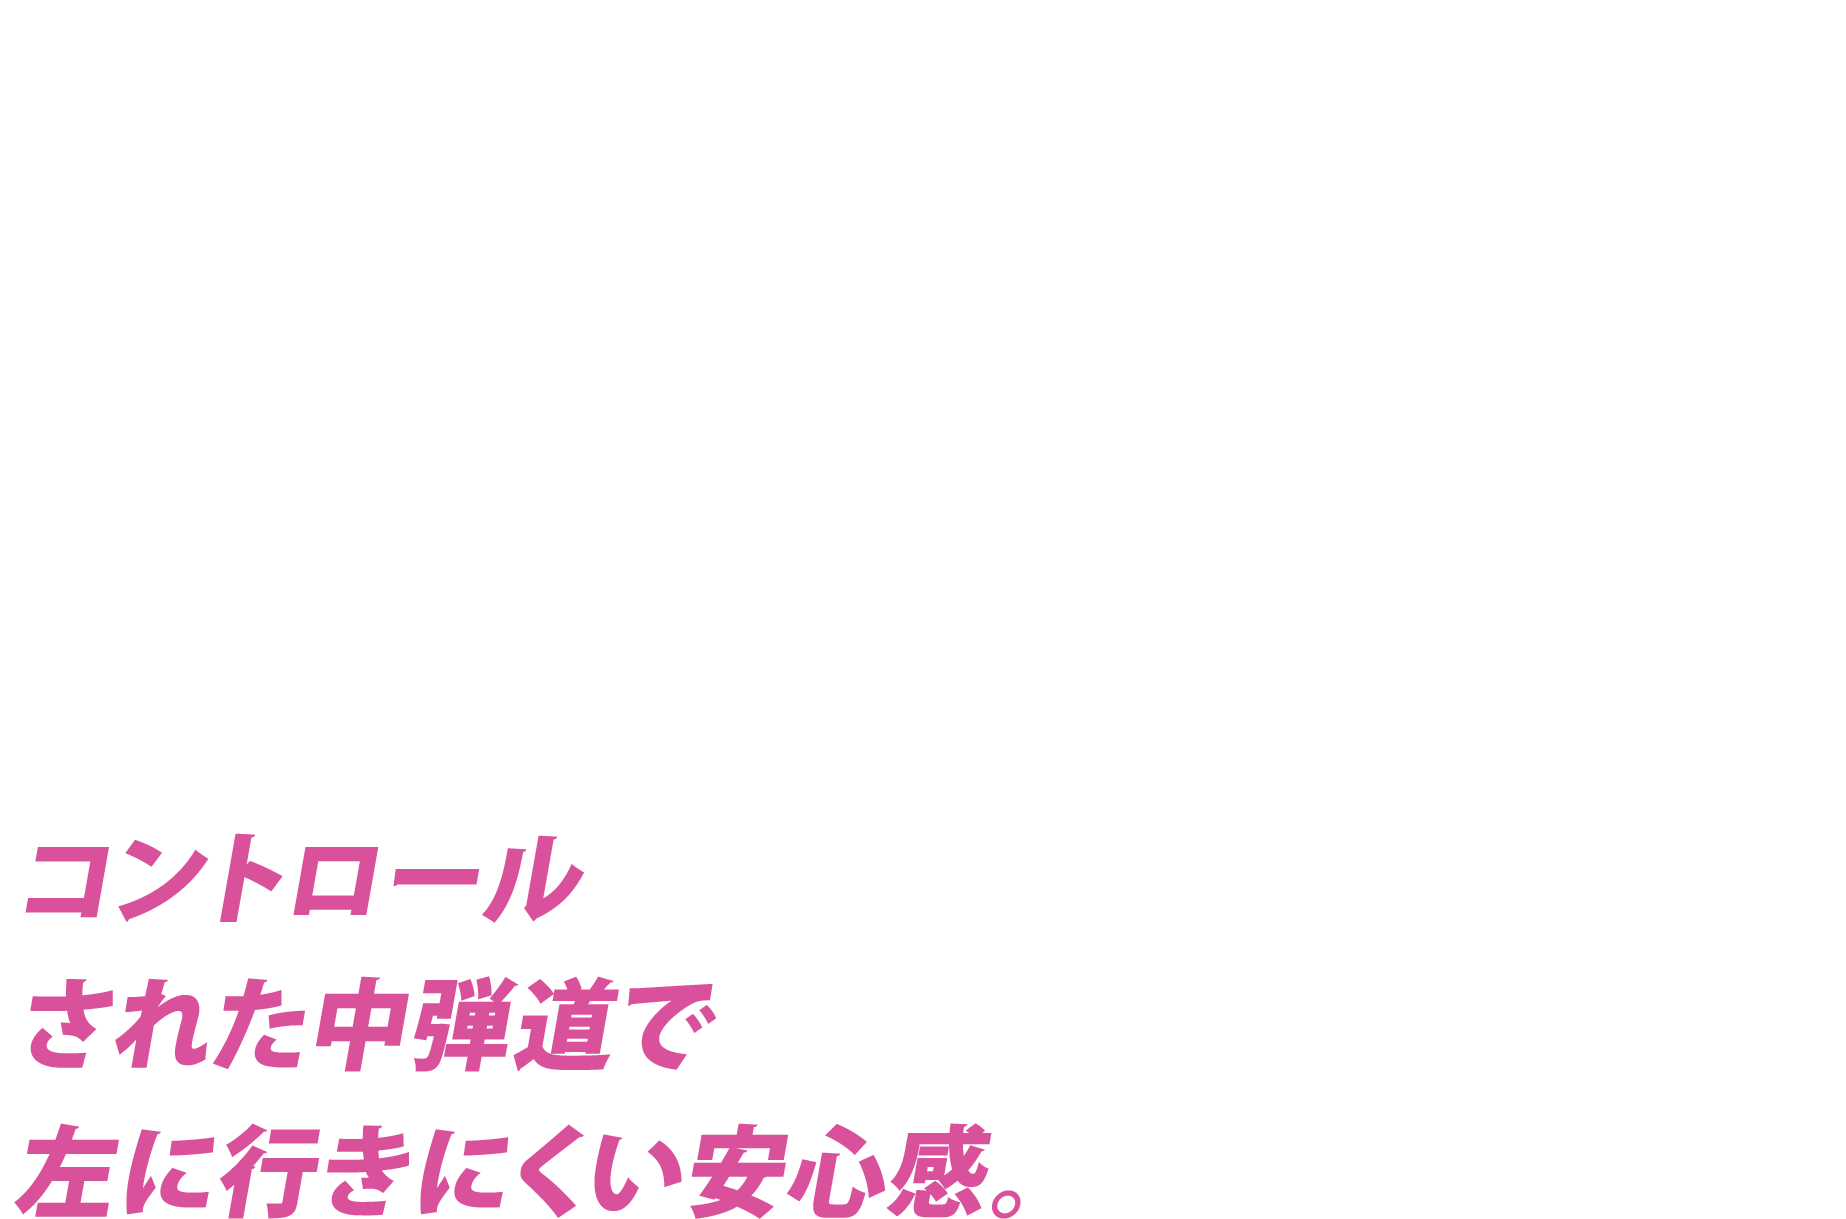 TM-X